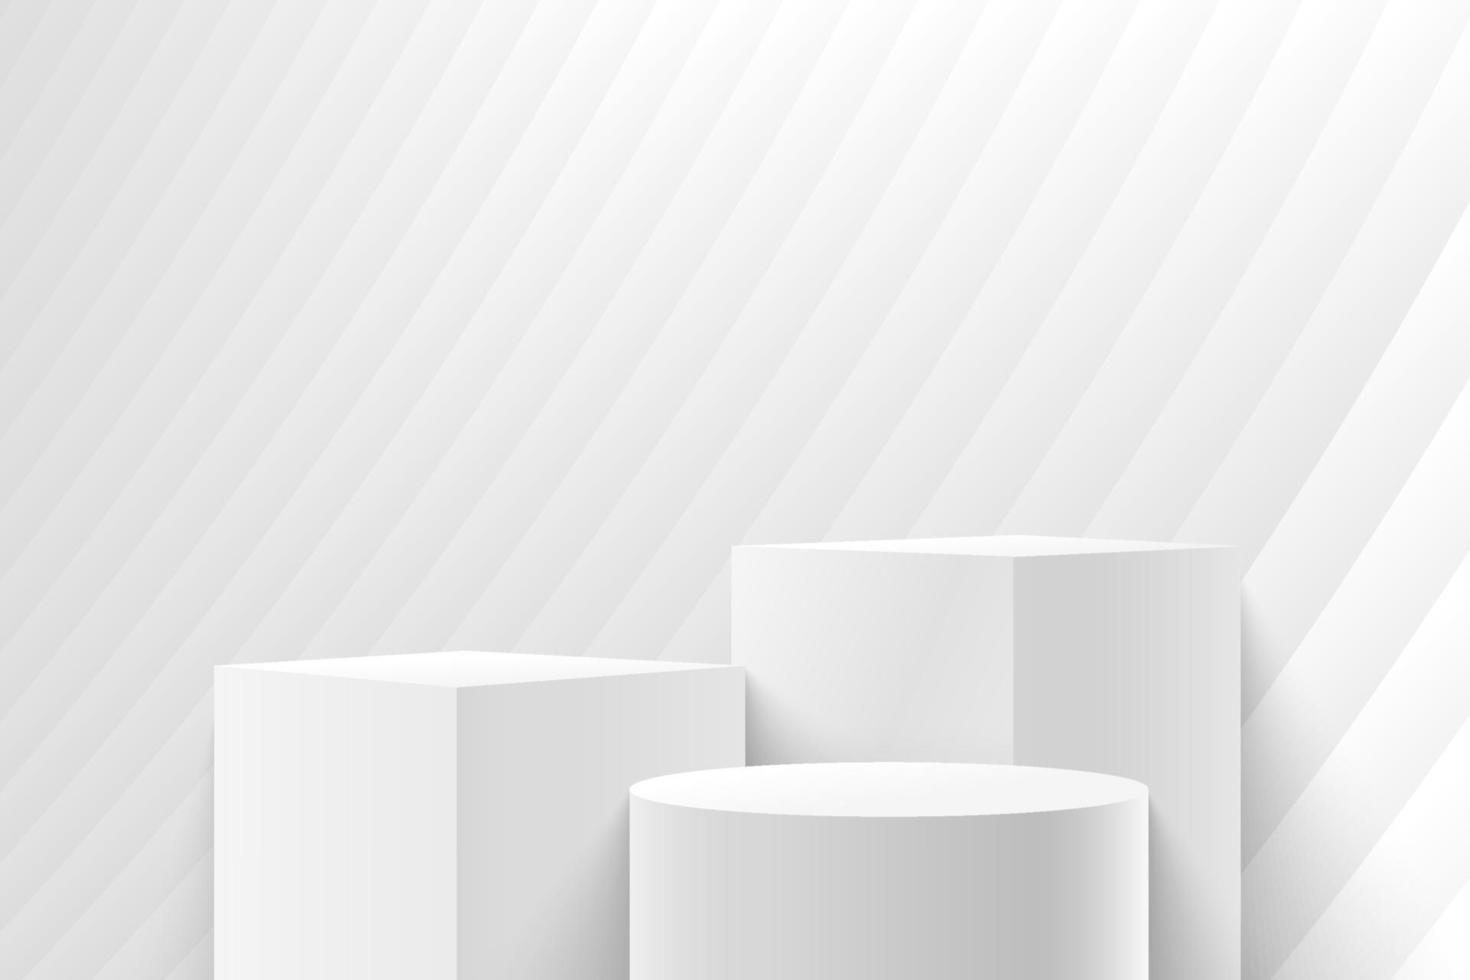 cube réaliste et présentoir rond pour produit au design moderne. rendu d'arrière-plan abstrait avec podium et scène de mur de texture blanche minimale, rendu 3d formes géométriques couleur grise. vecteur